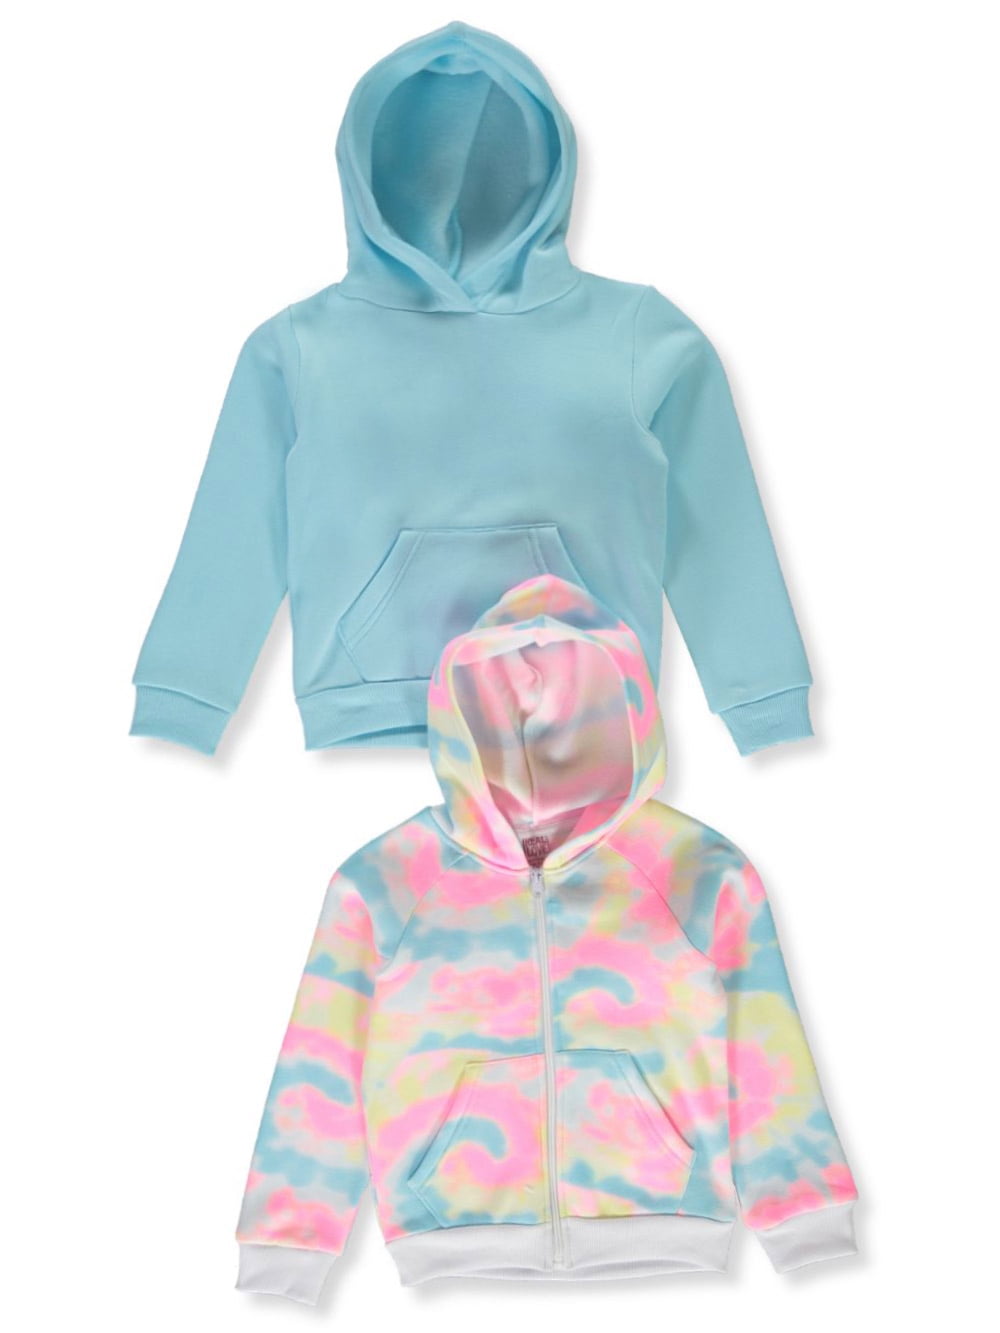 3D Hoodie Sweatshirt 5/6, Royal Blue Toddler Little Boy Love Big Bear Face 